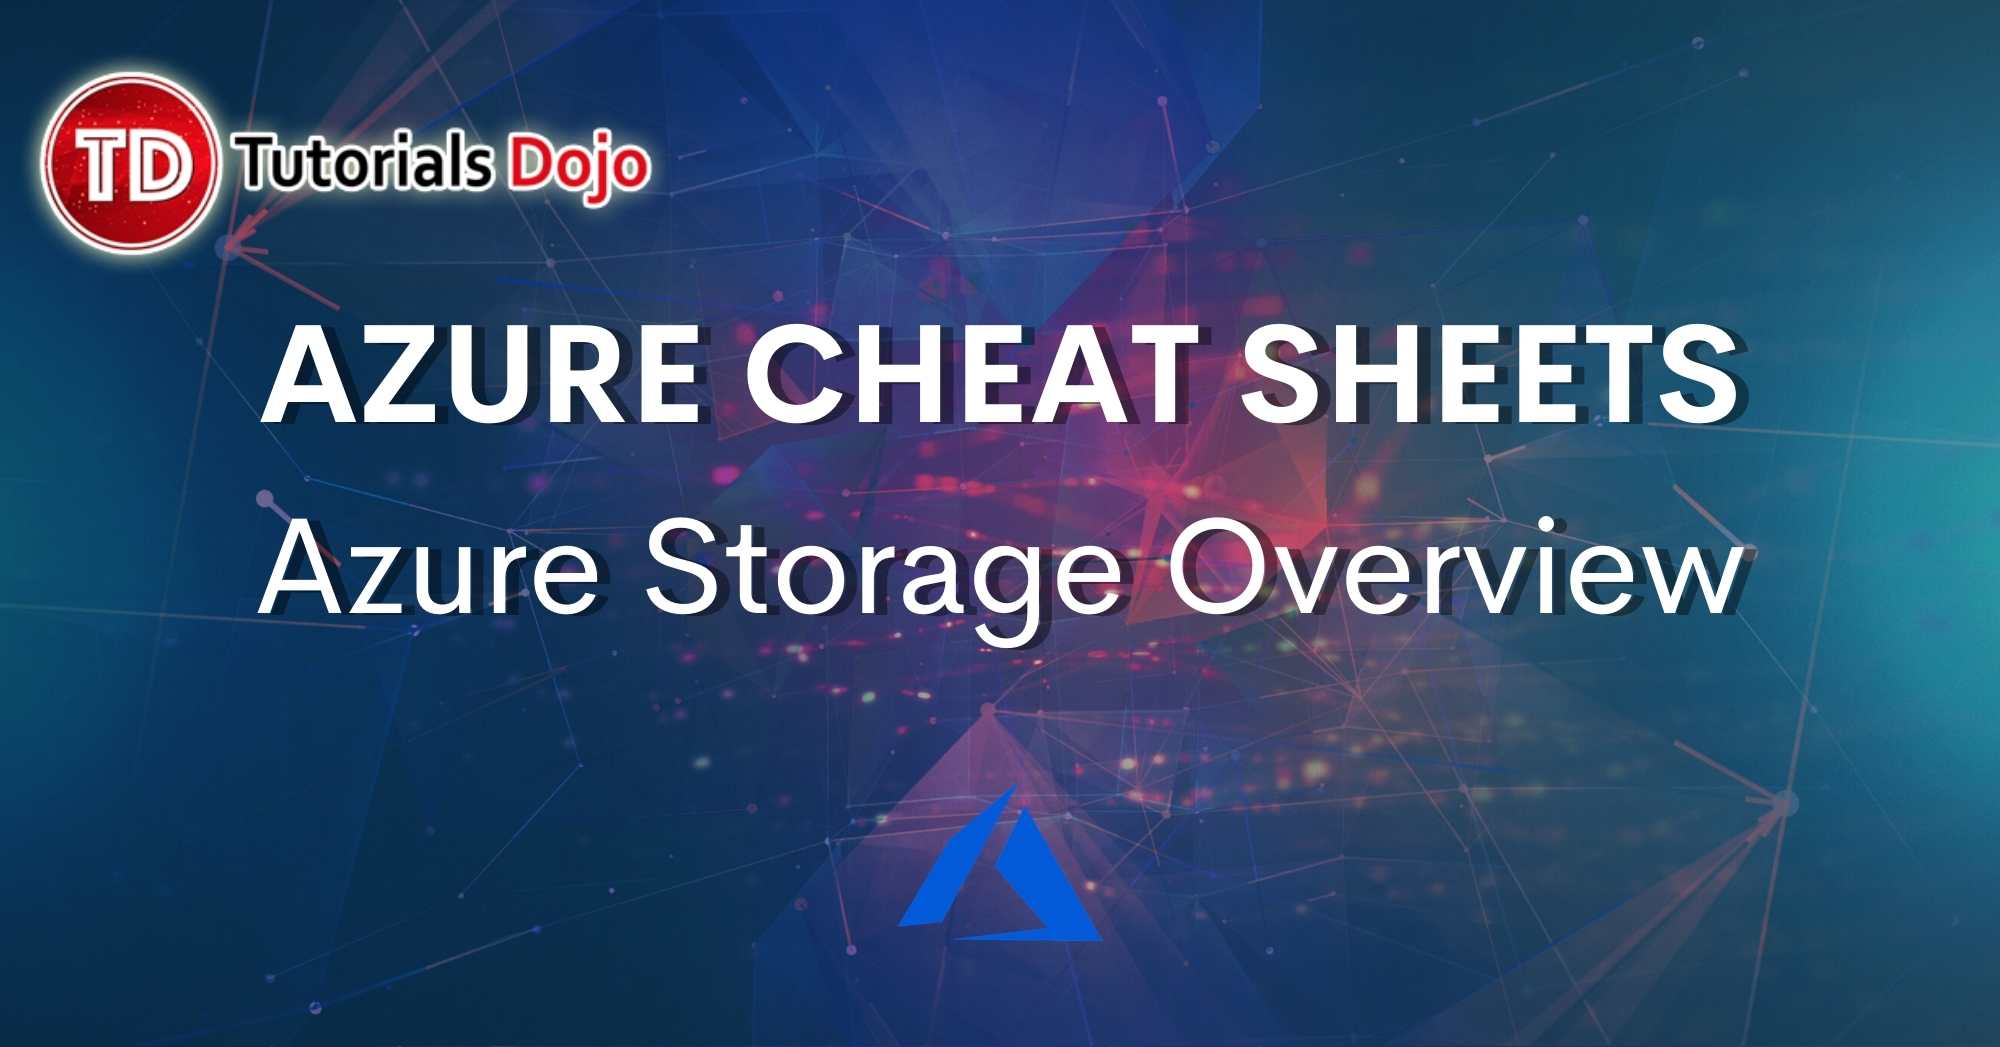 Azure Storage Overview Cheat Sheet